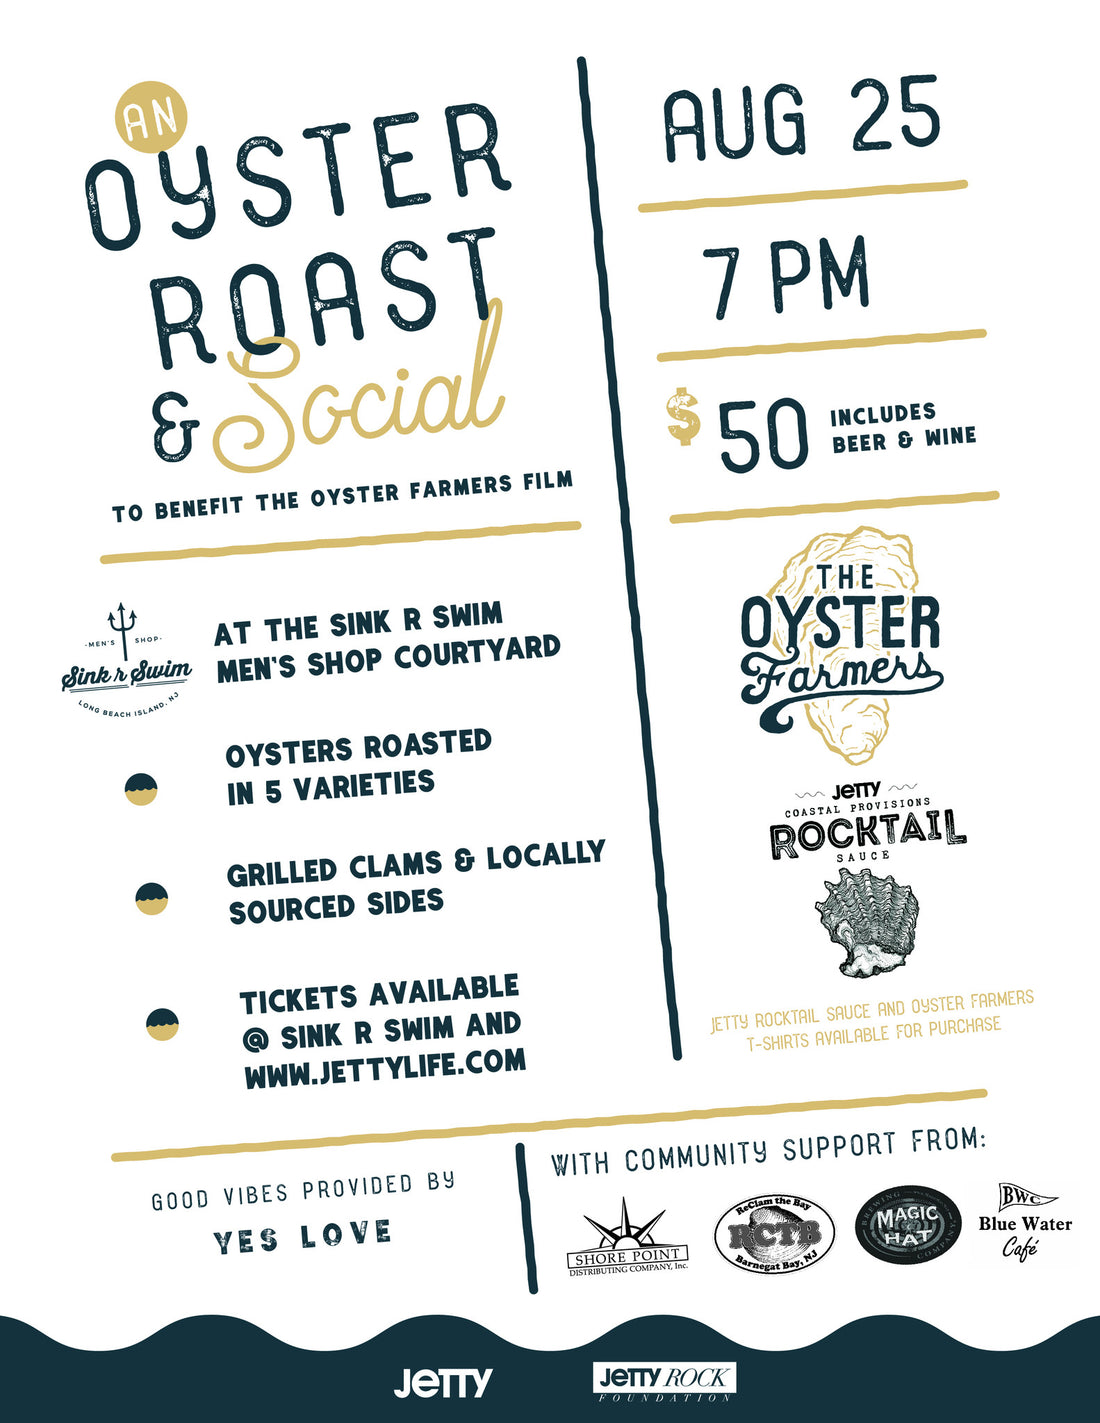 An Oyster Roast & Social